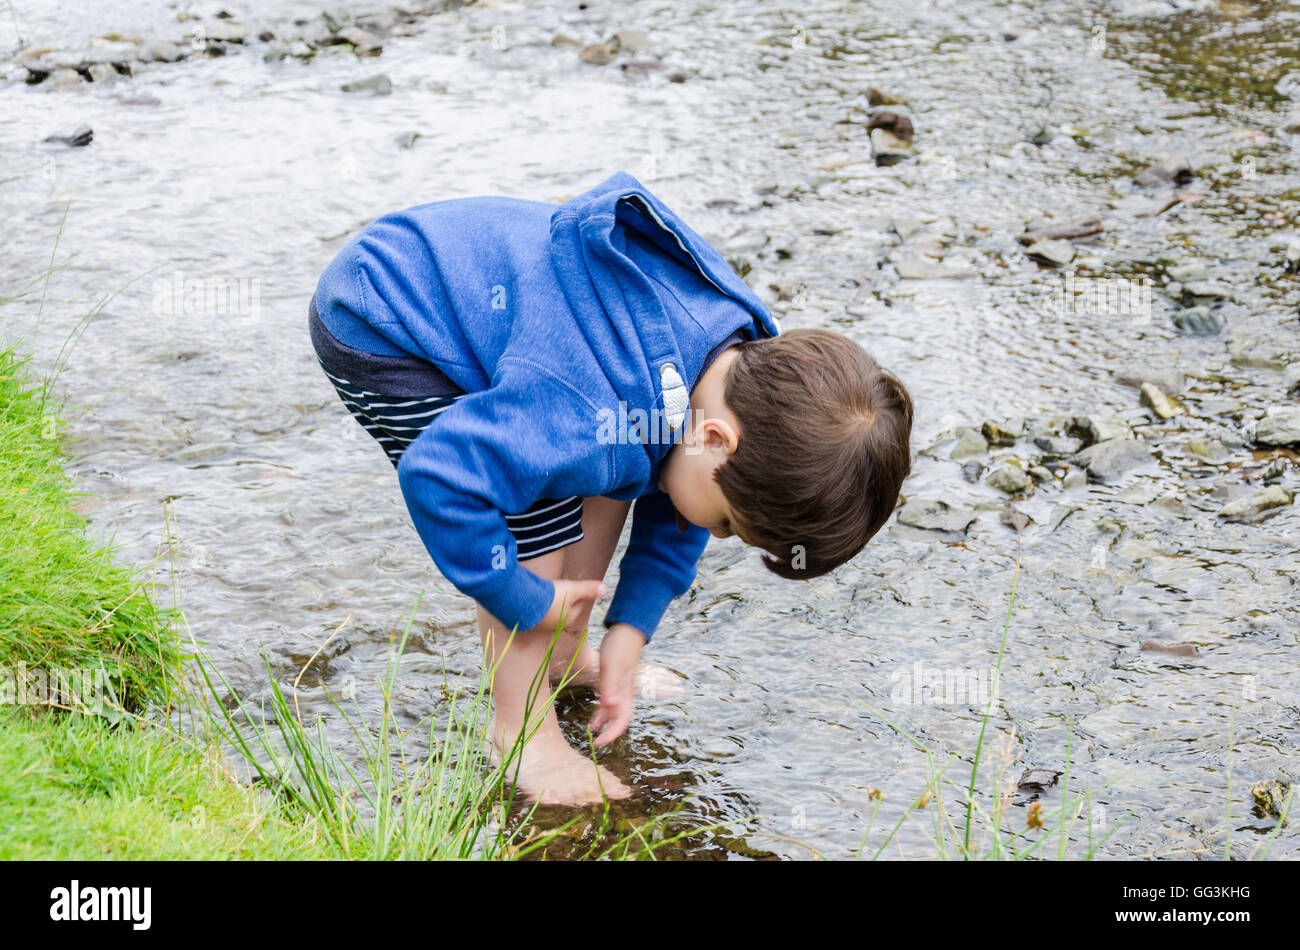 Un jeune garçon se lave les pieds dans un ruisseau Banque D'Images